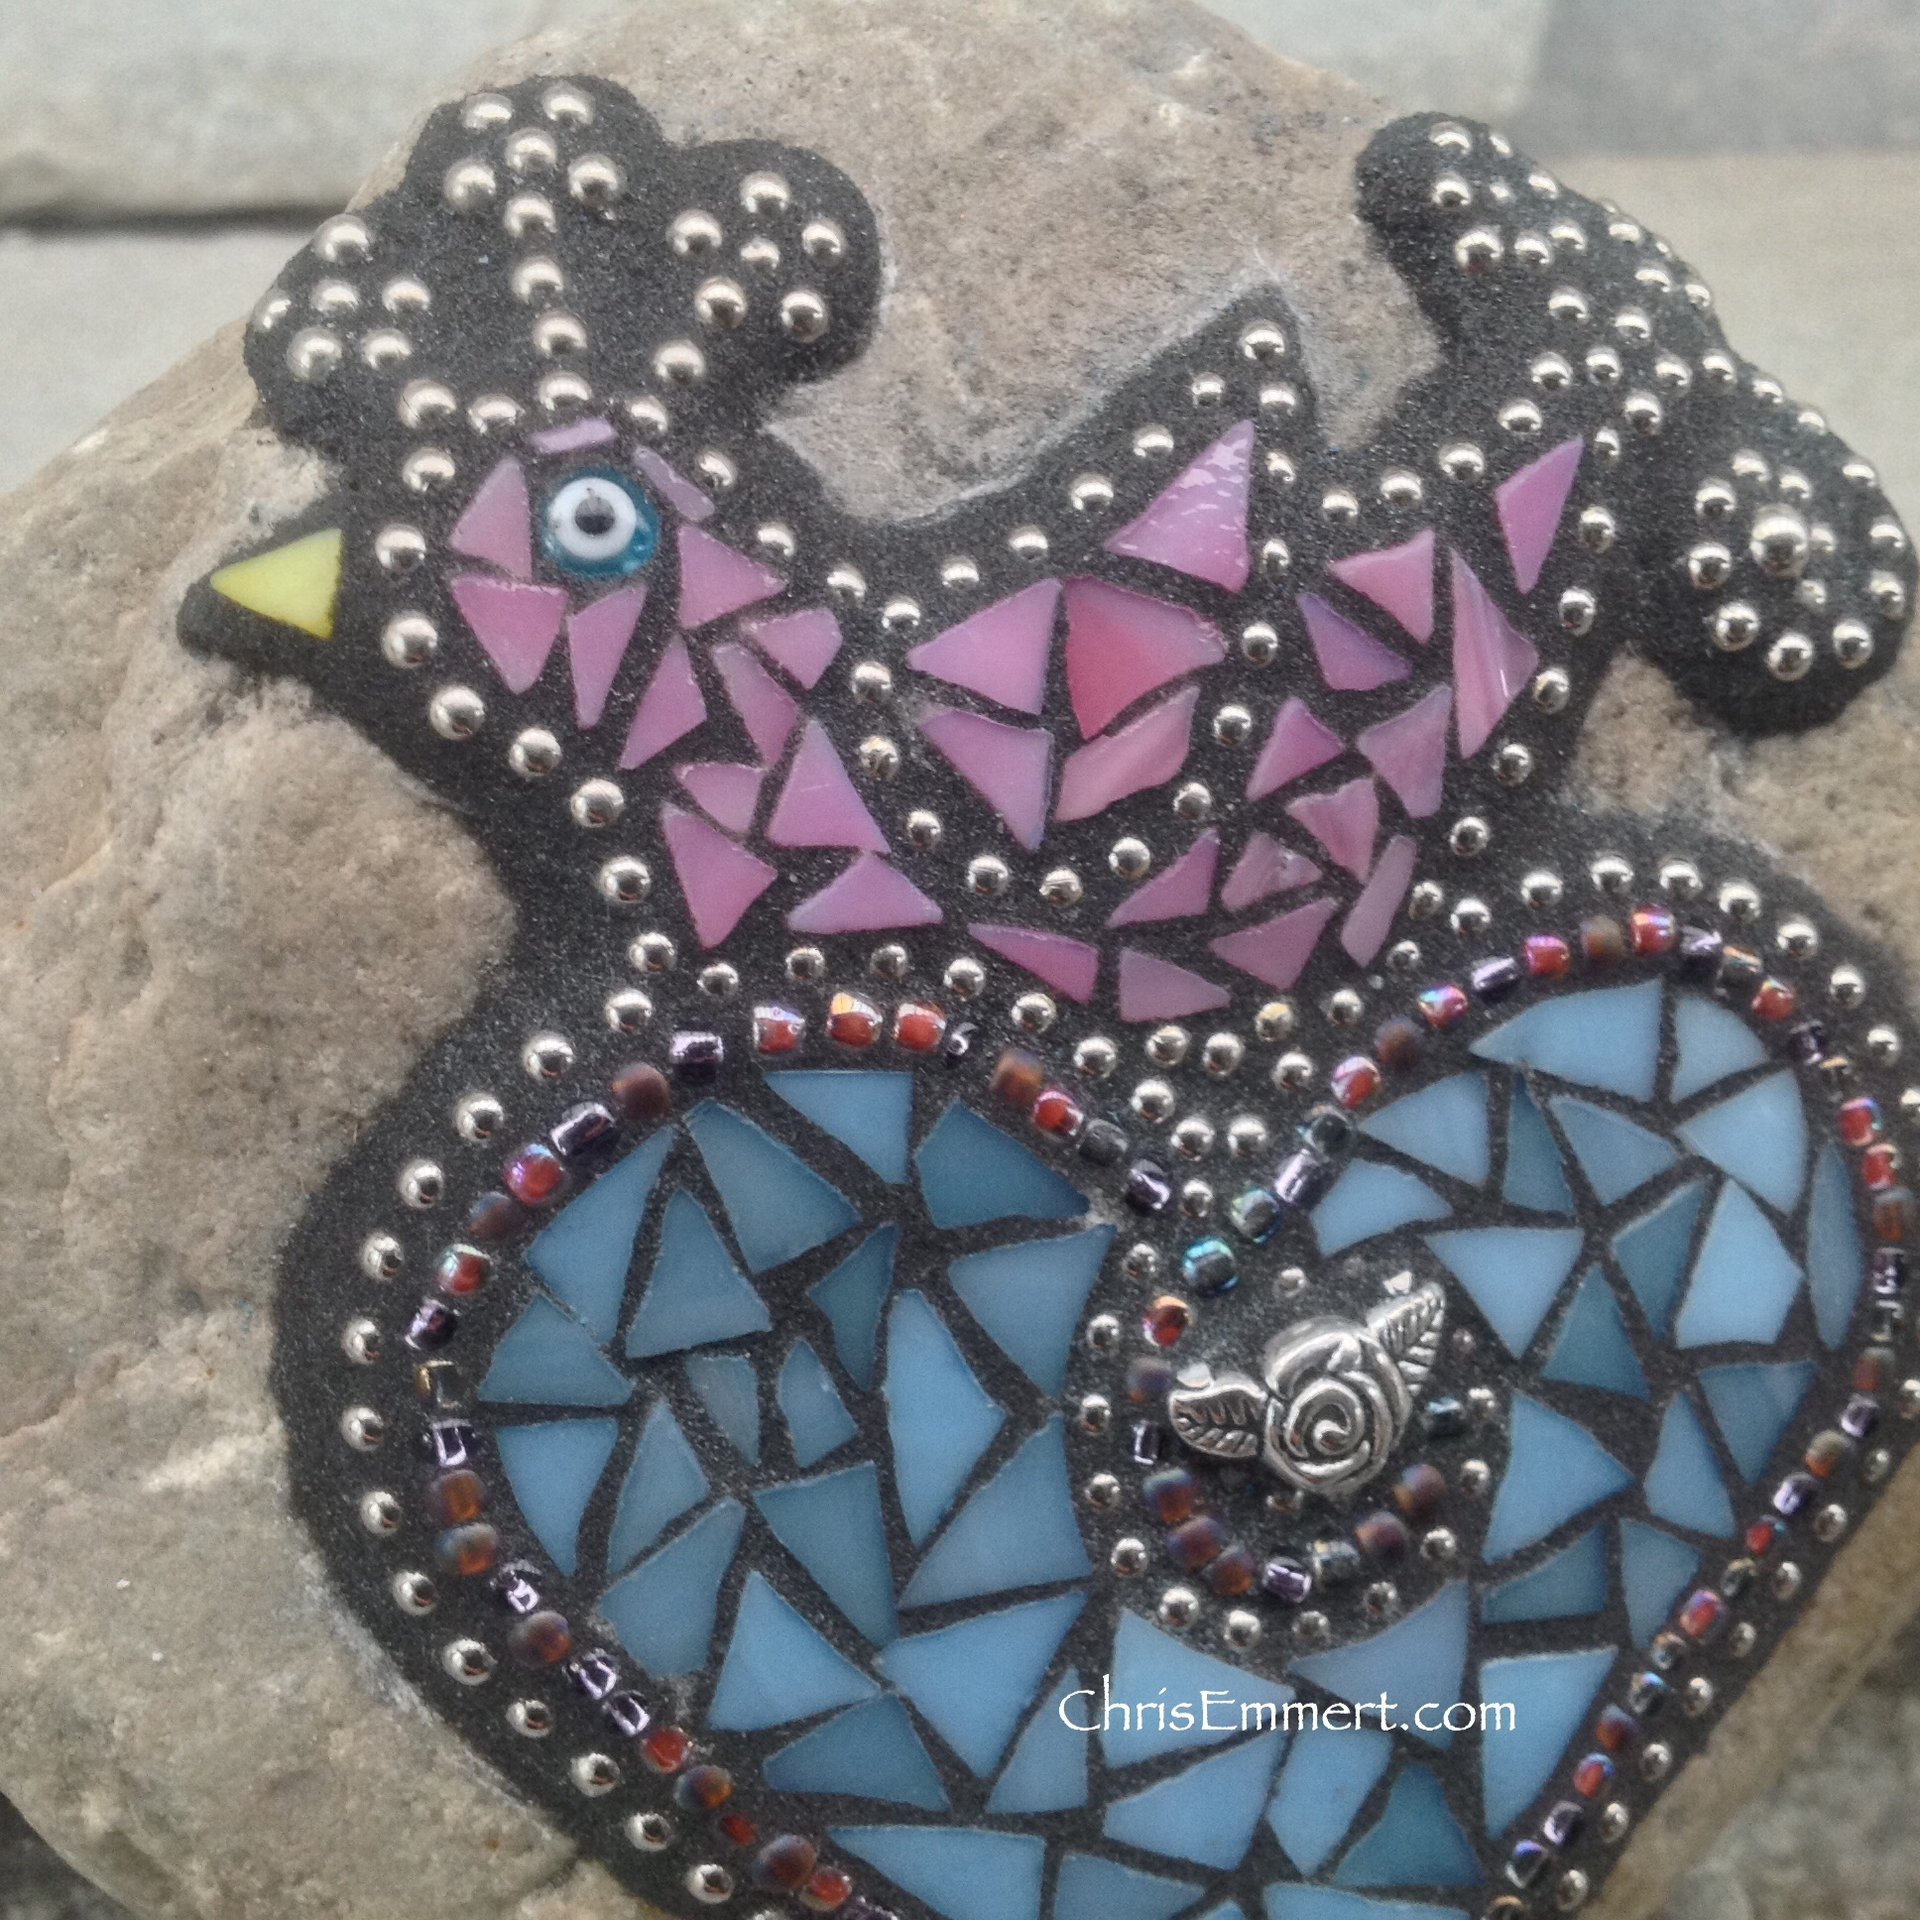 Pink Bird on a Blue Heart Mosaic -Garden Stone